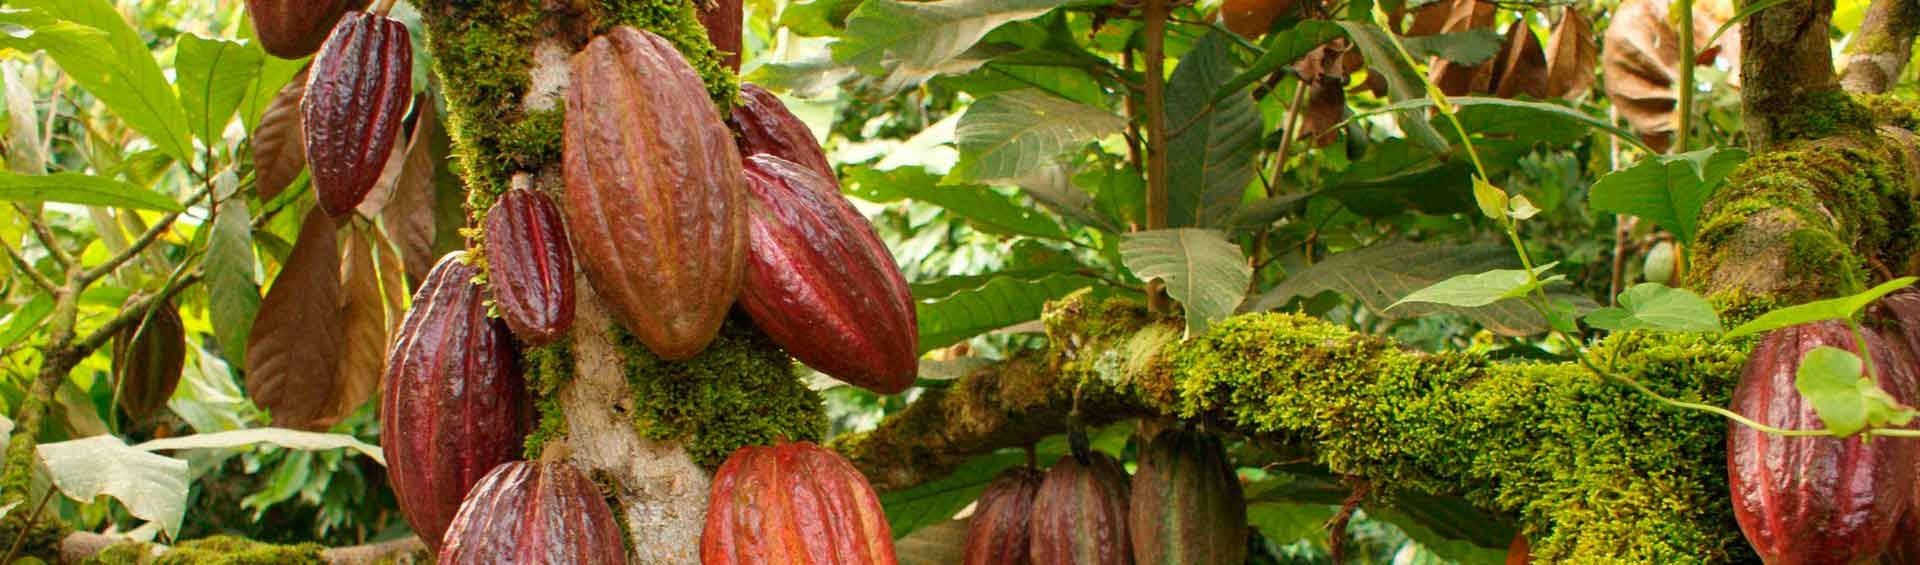 República Dominicana: cacao de origen